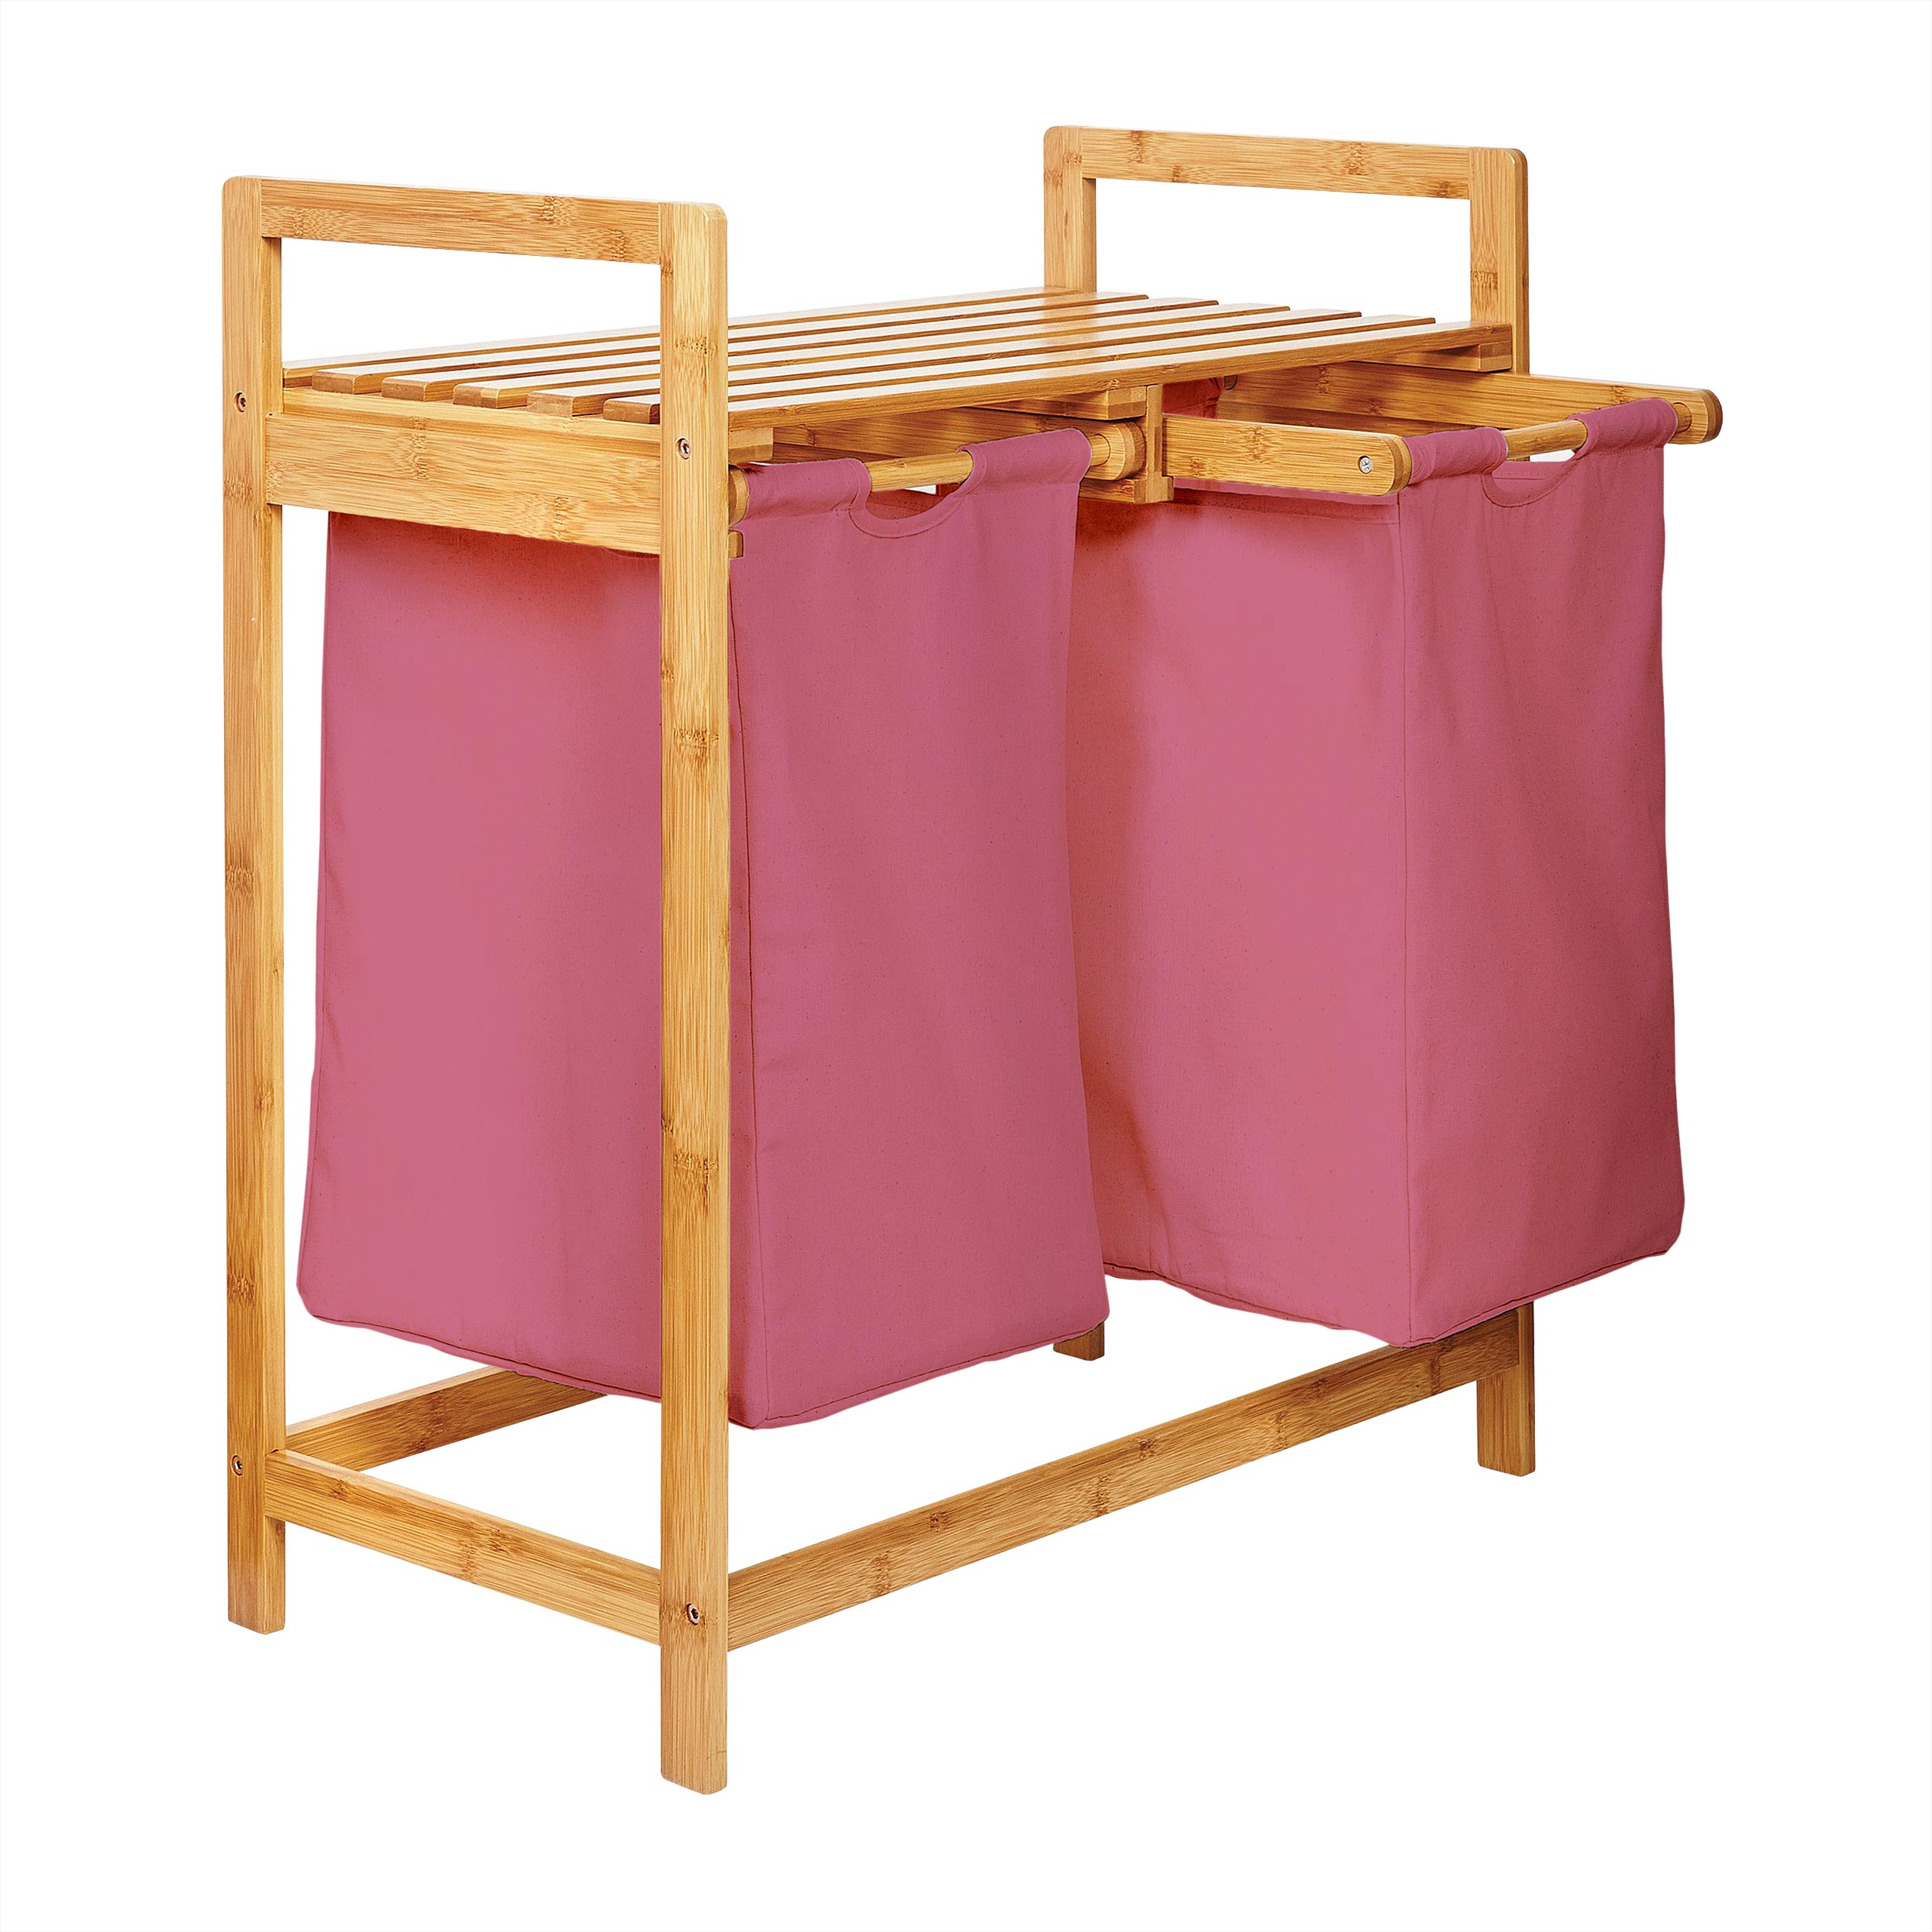 Wäschekorb aus Bambus mit 2 ausziehbaren Wäschesäcken - Größe ca. 73 cm Höhe x 64 cm Breite x 33 cm Tiefe - Farbe Rosa